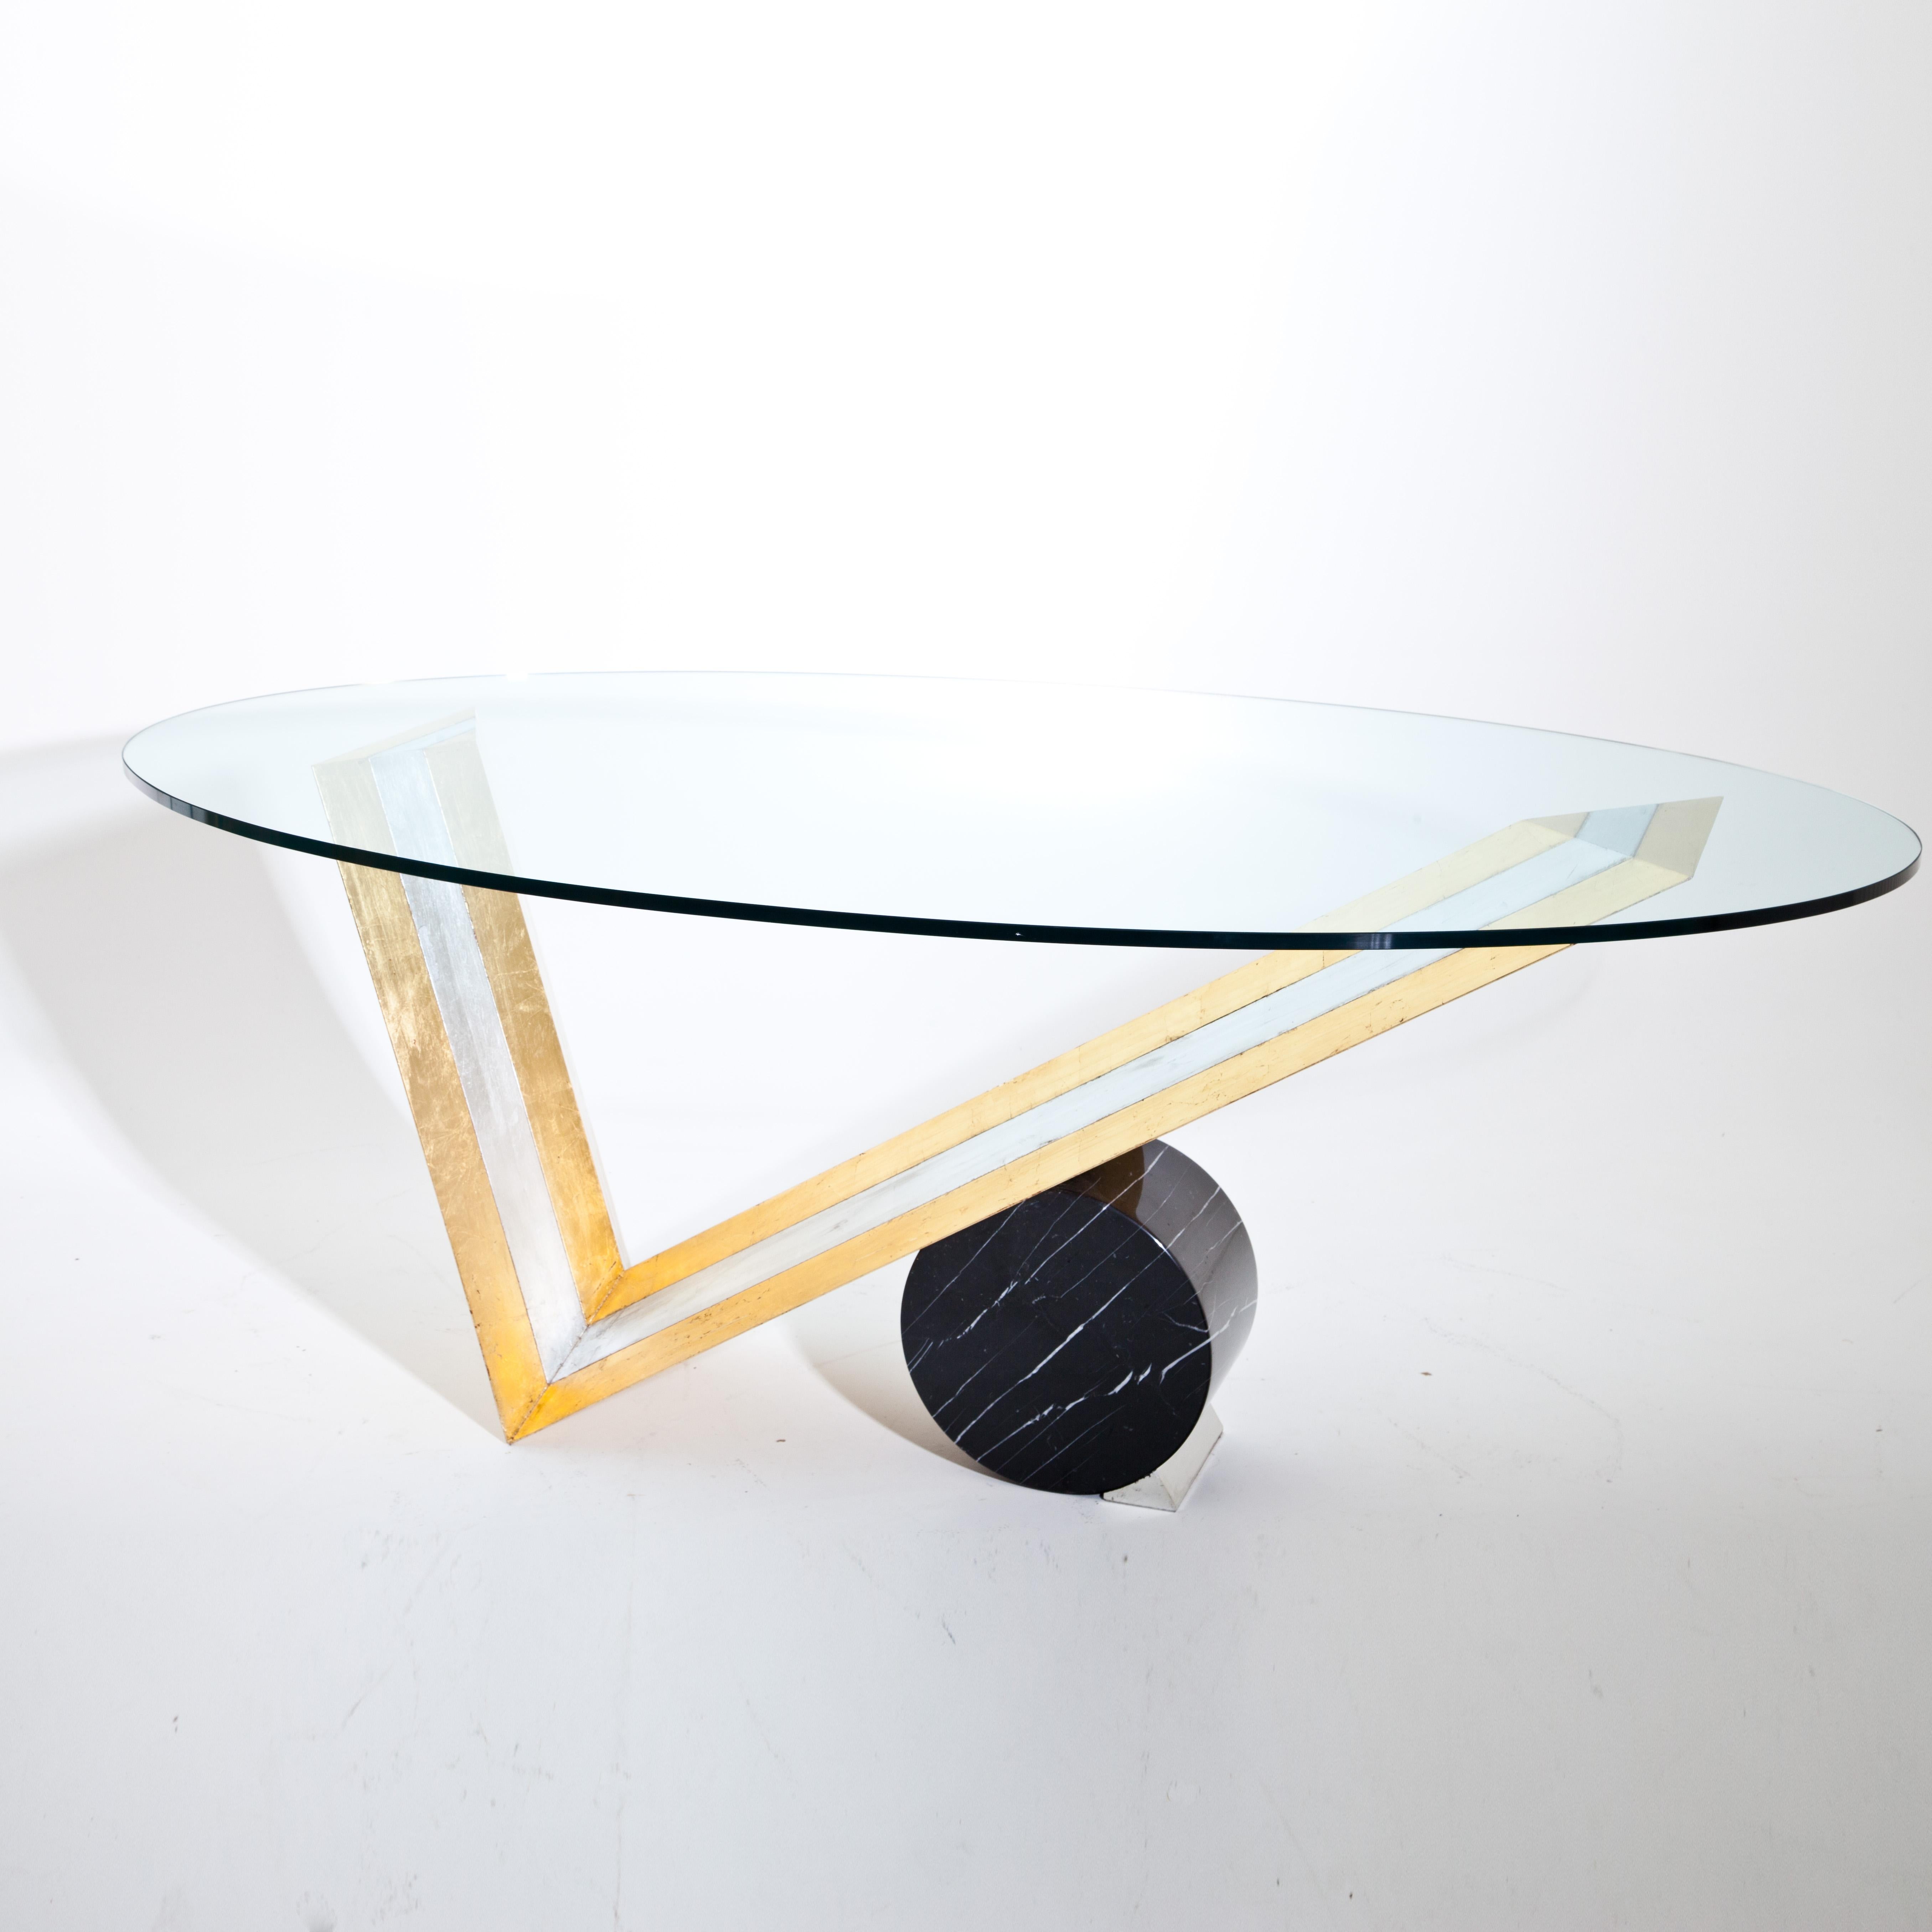 Grande table avec plateau en verre ovale sur un cadre en bois en forme de V avec un grand bloc cylindrique en marbre noir. Le cadre en bois est patiné en argent et en or.